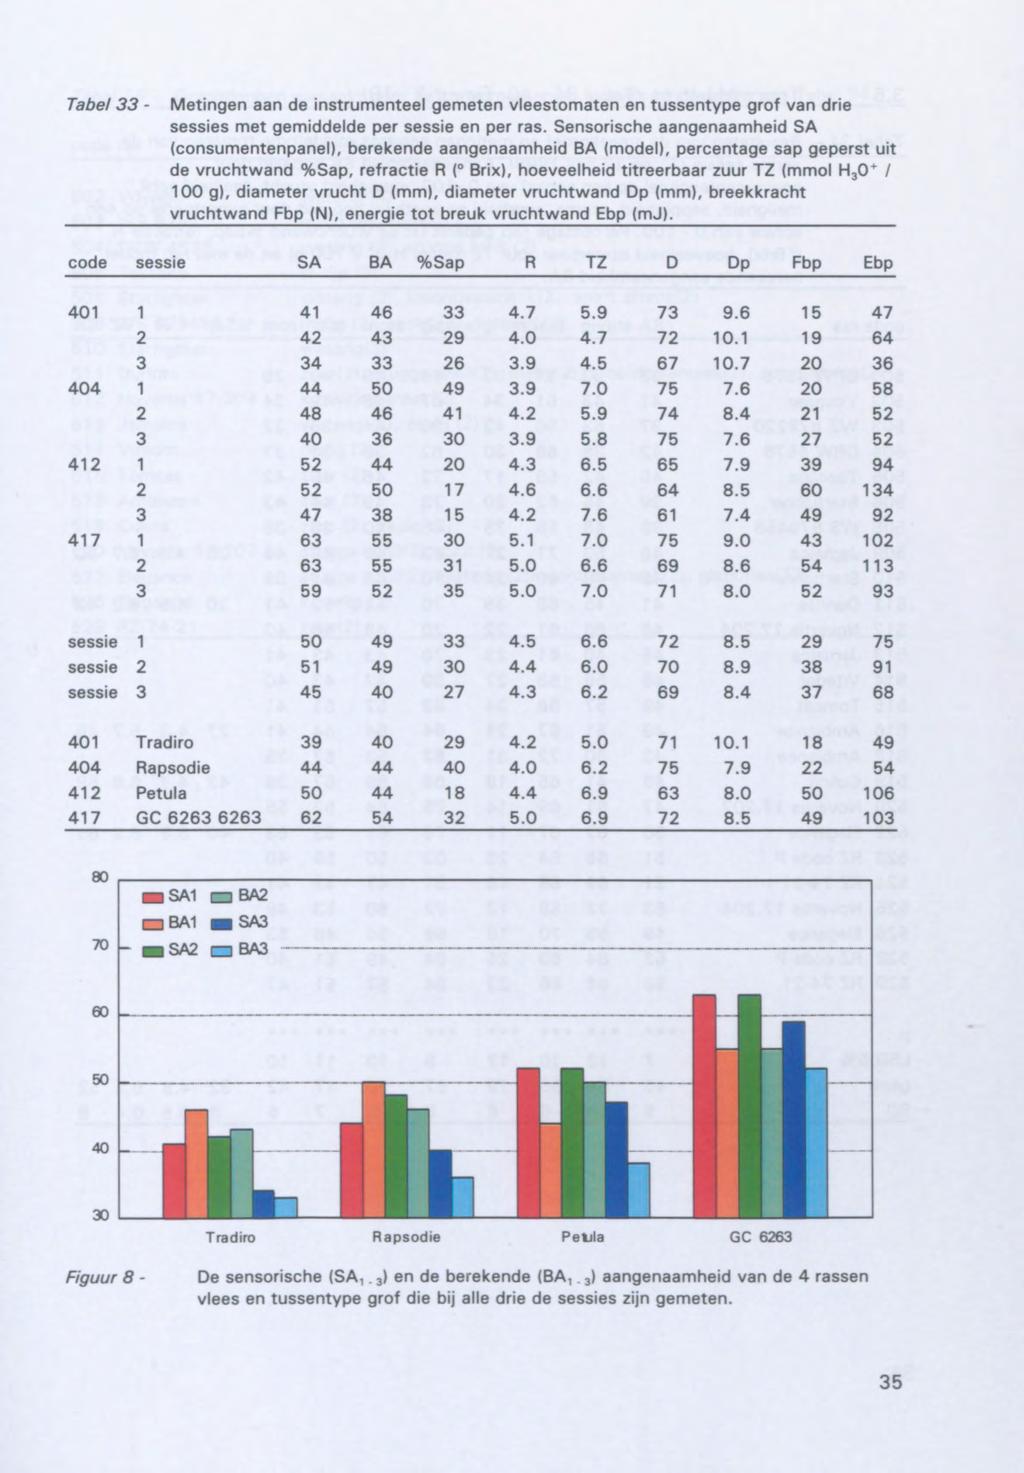 Tabel 33 - Metingen aan de instrumenteel gemeten vleestomaten en tussentype grof van drie sessies met gemiddelde per sessie en per ras.